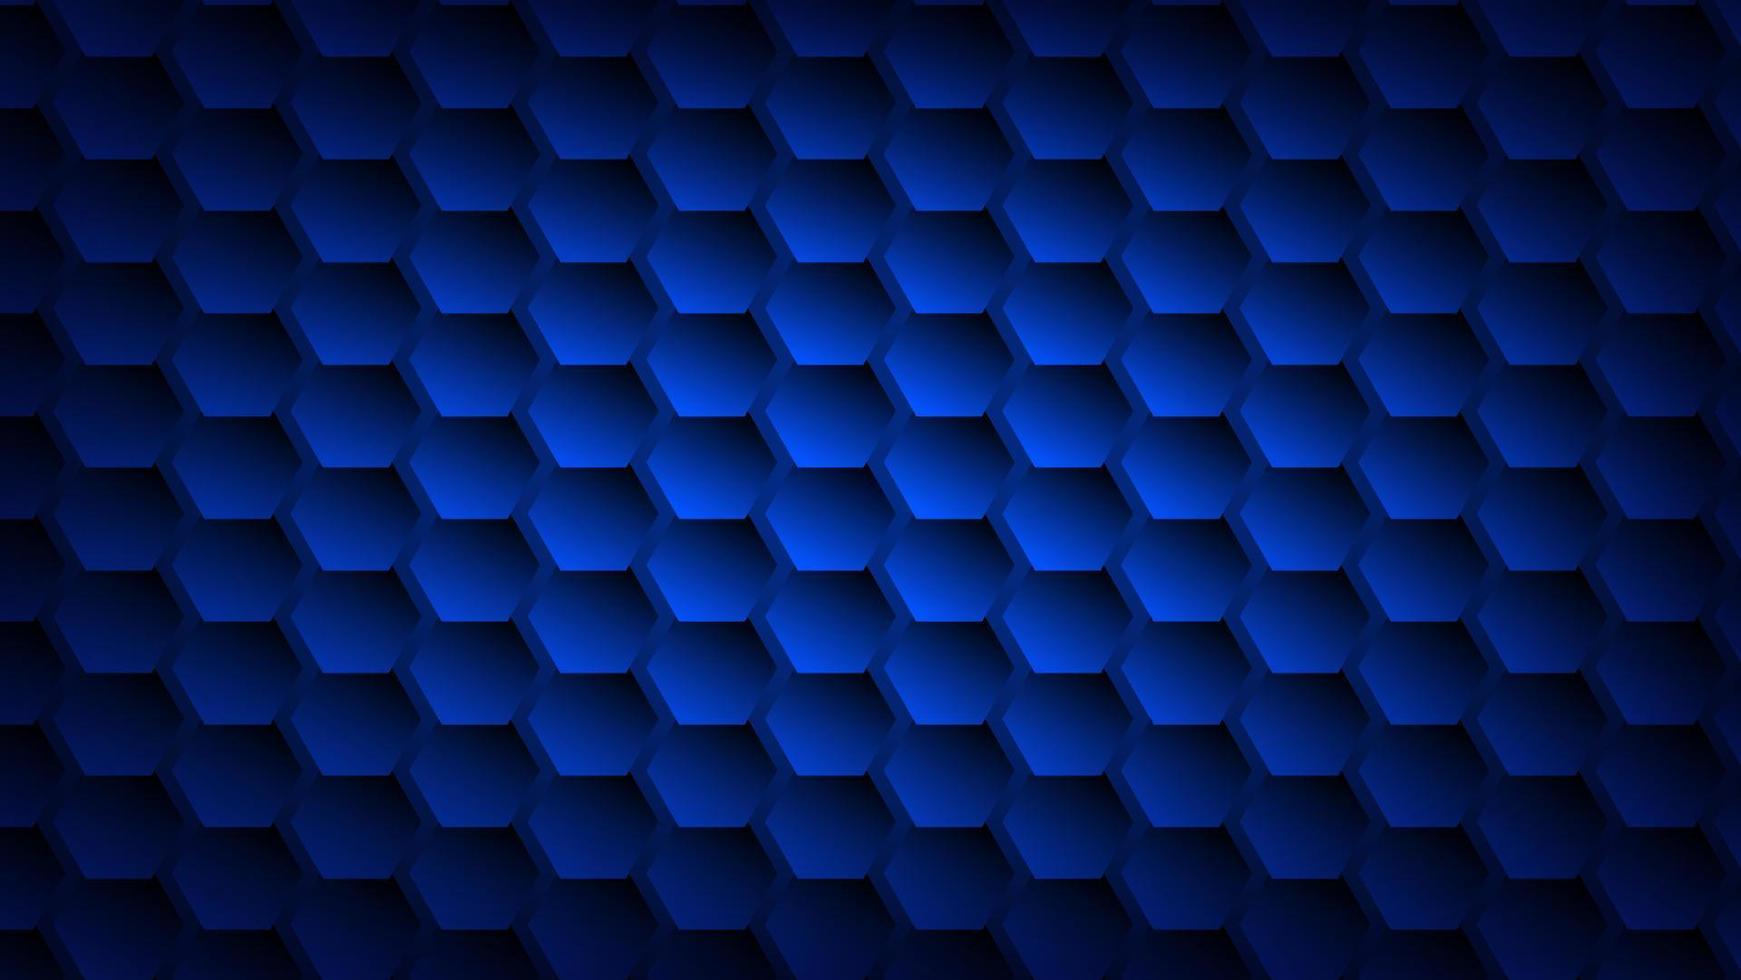 abstraktes futuristisches technologiehintergrundkonzept. sechseckmuster mit blauer beleuchtung für grafikdesignelement vektor